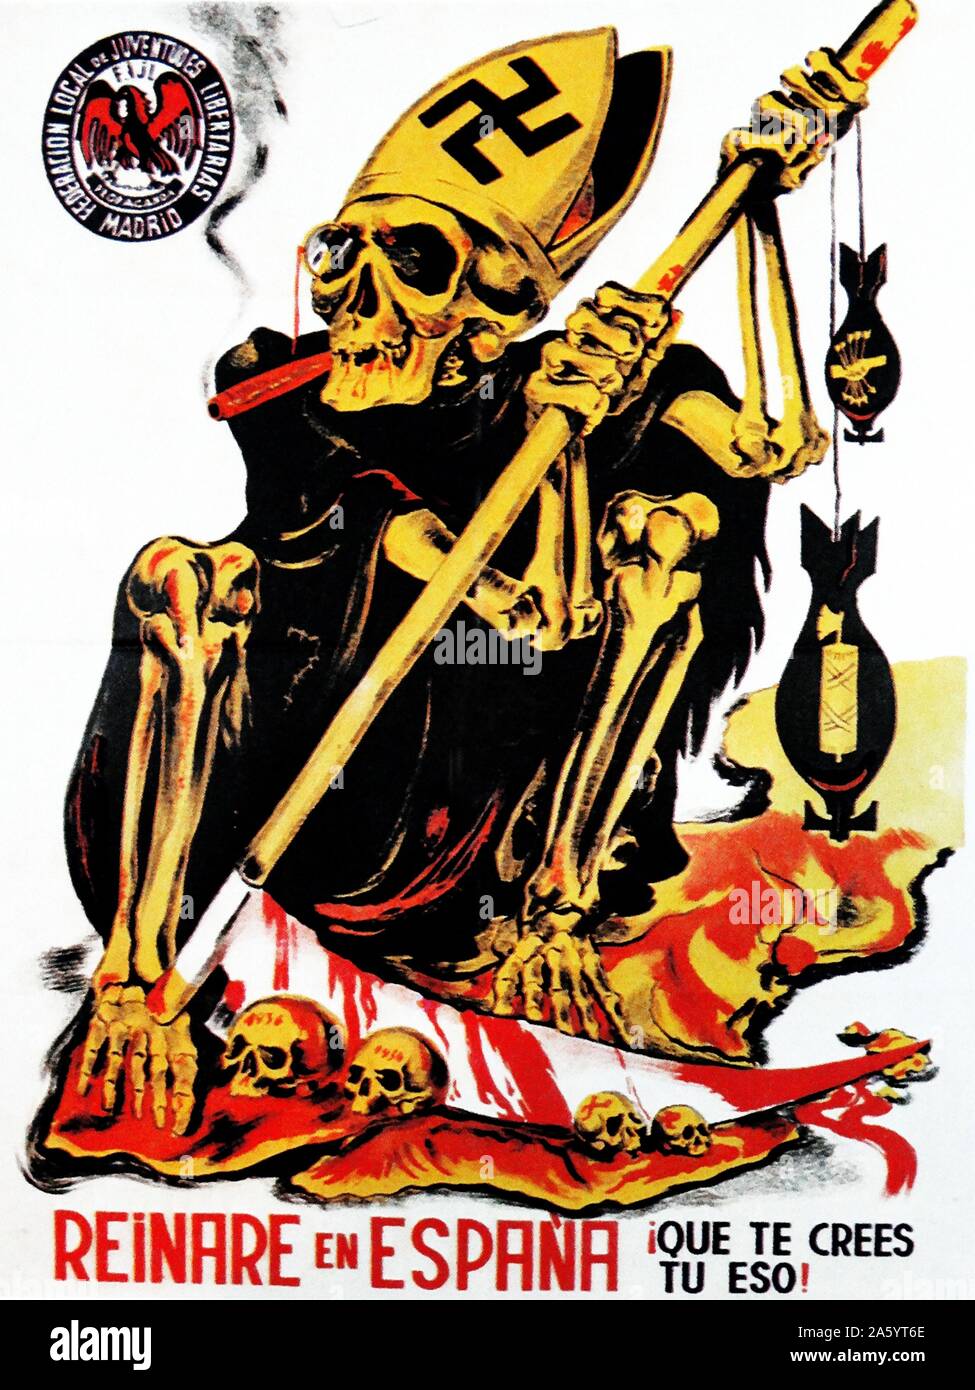 Affiches de propagande anti Falangist en Espagne, pendant la guerre civile espagnole. Le christianisme (représenté par la mitre d'évêque) avec le nazisme (représenté par la croix gammée) et le fascisme (représenté par le fasces-bombe, et avec de sang et la mort. Banque D'Images